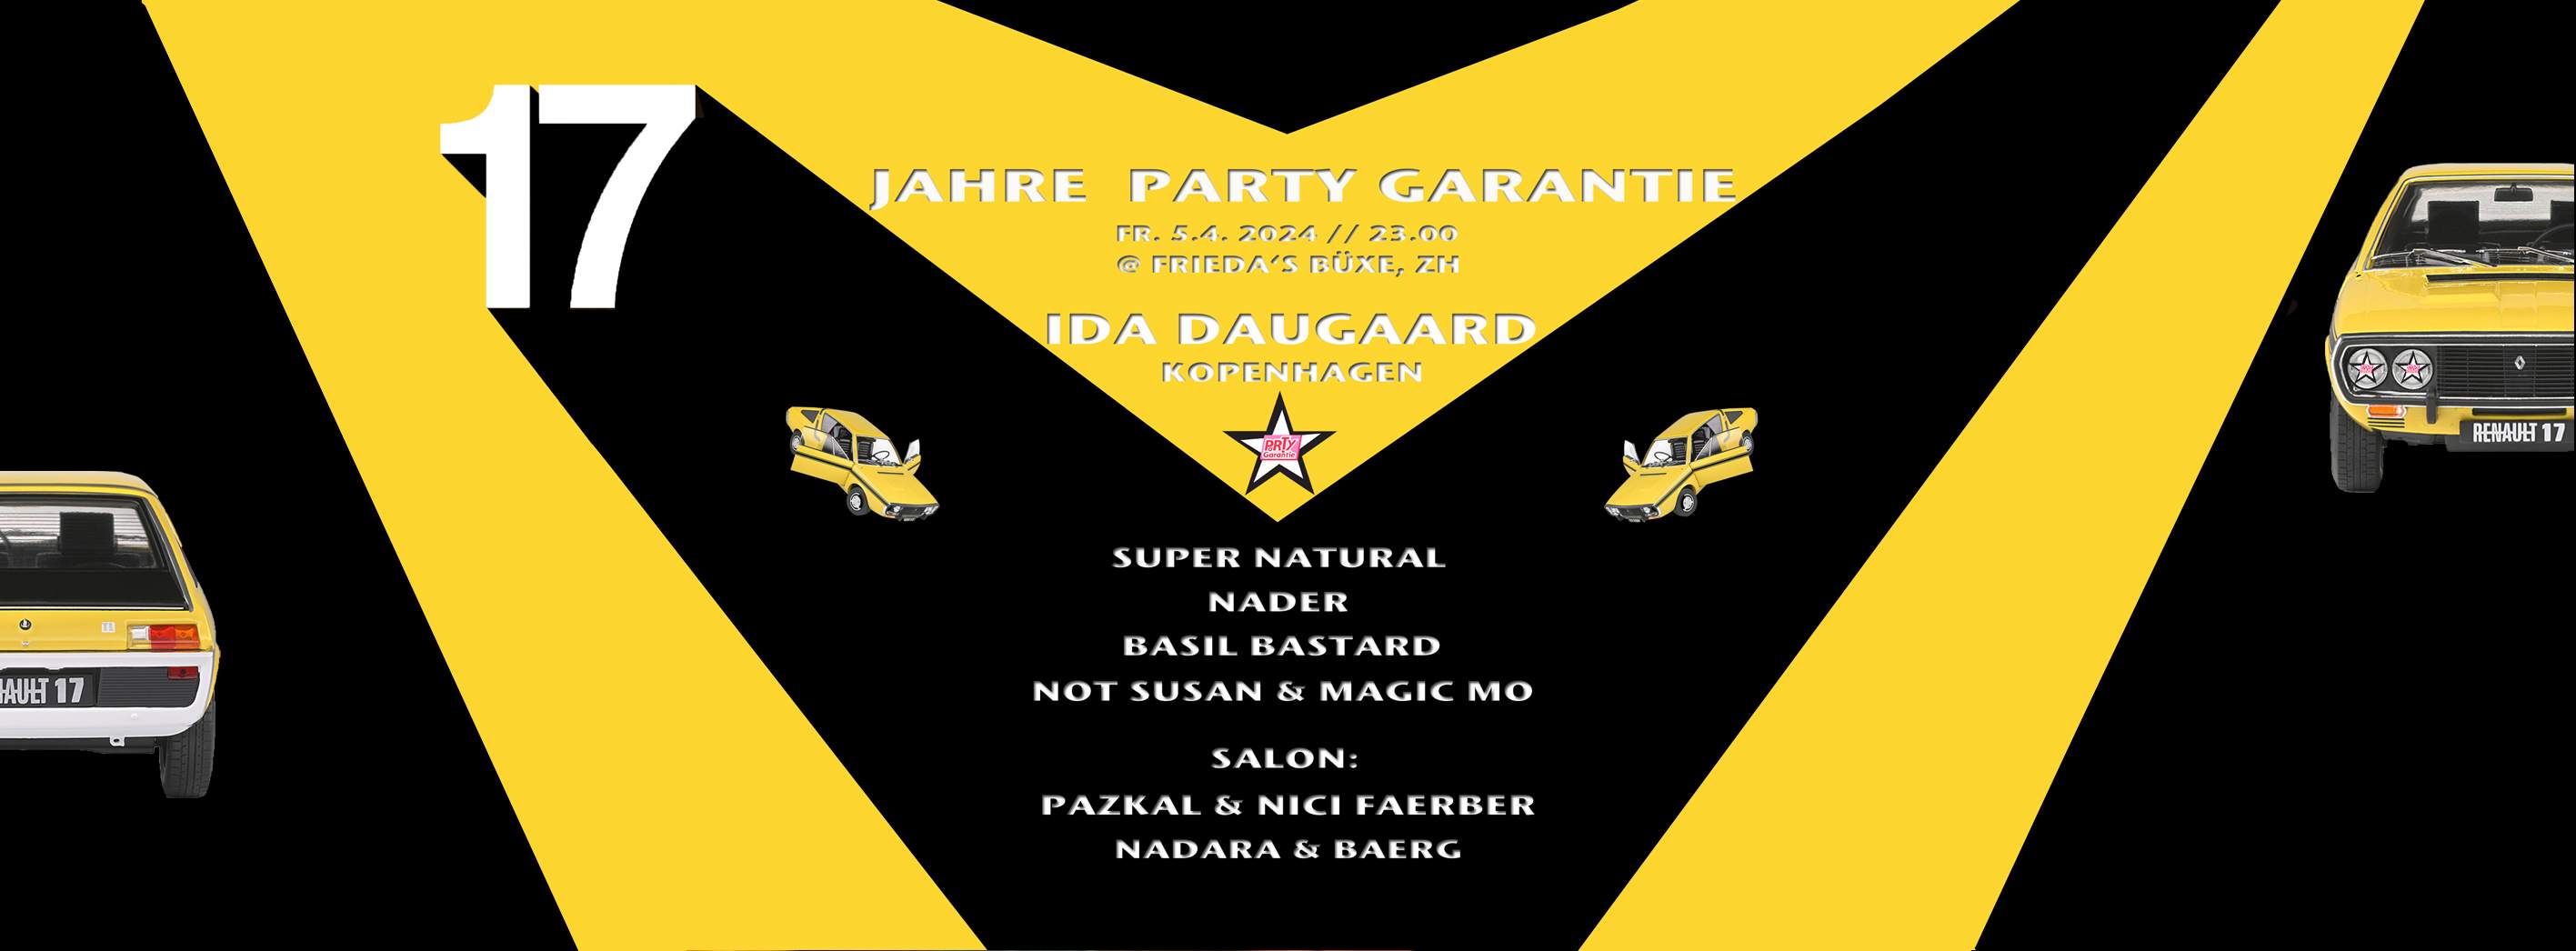 17 JAHRE PARTY GARANTIE - フライヤー表